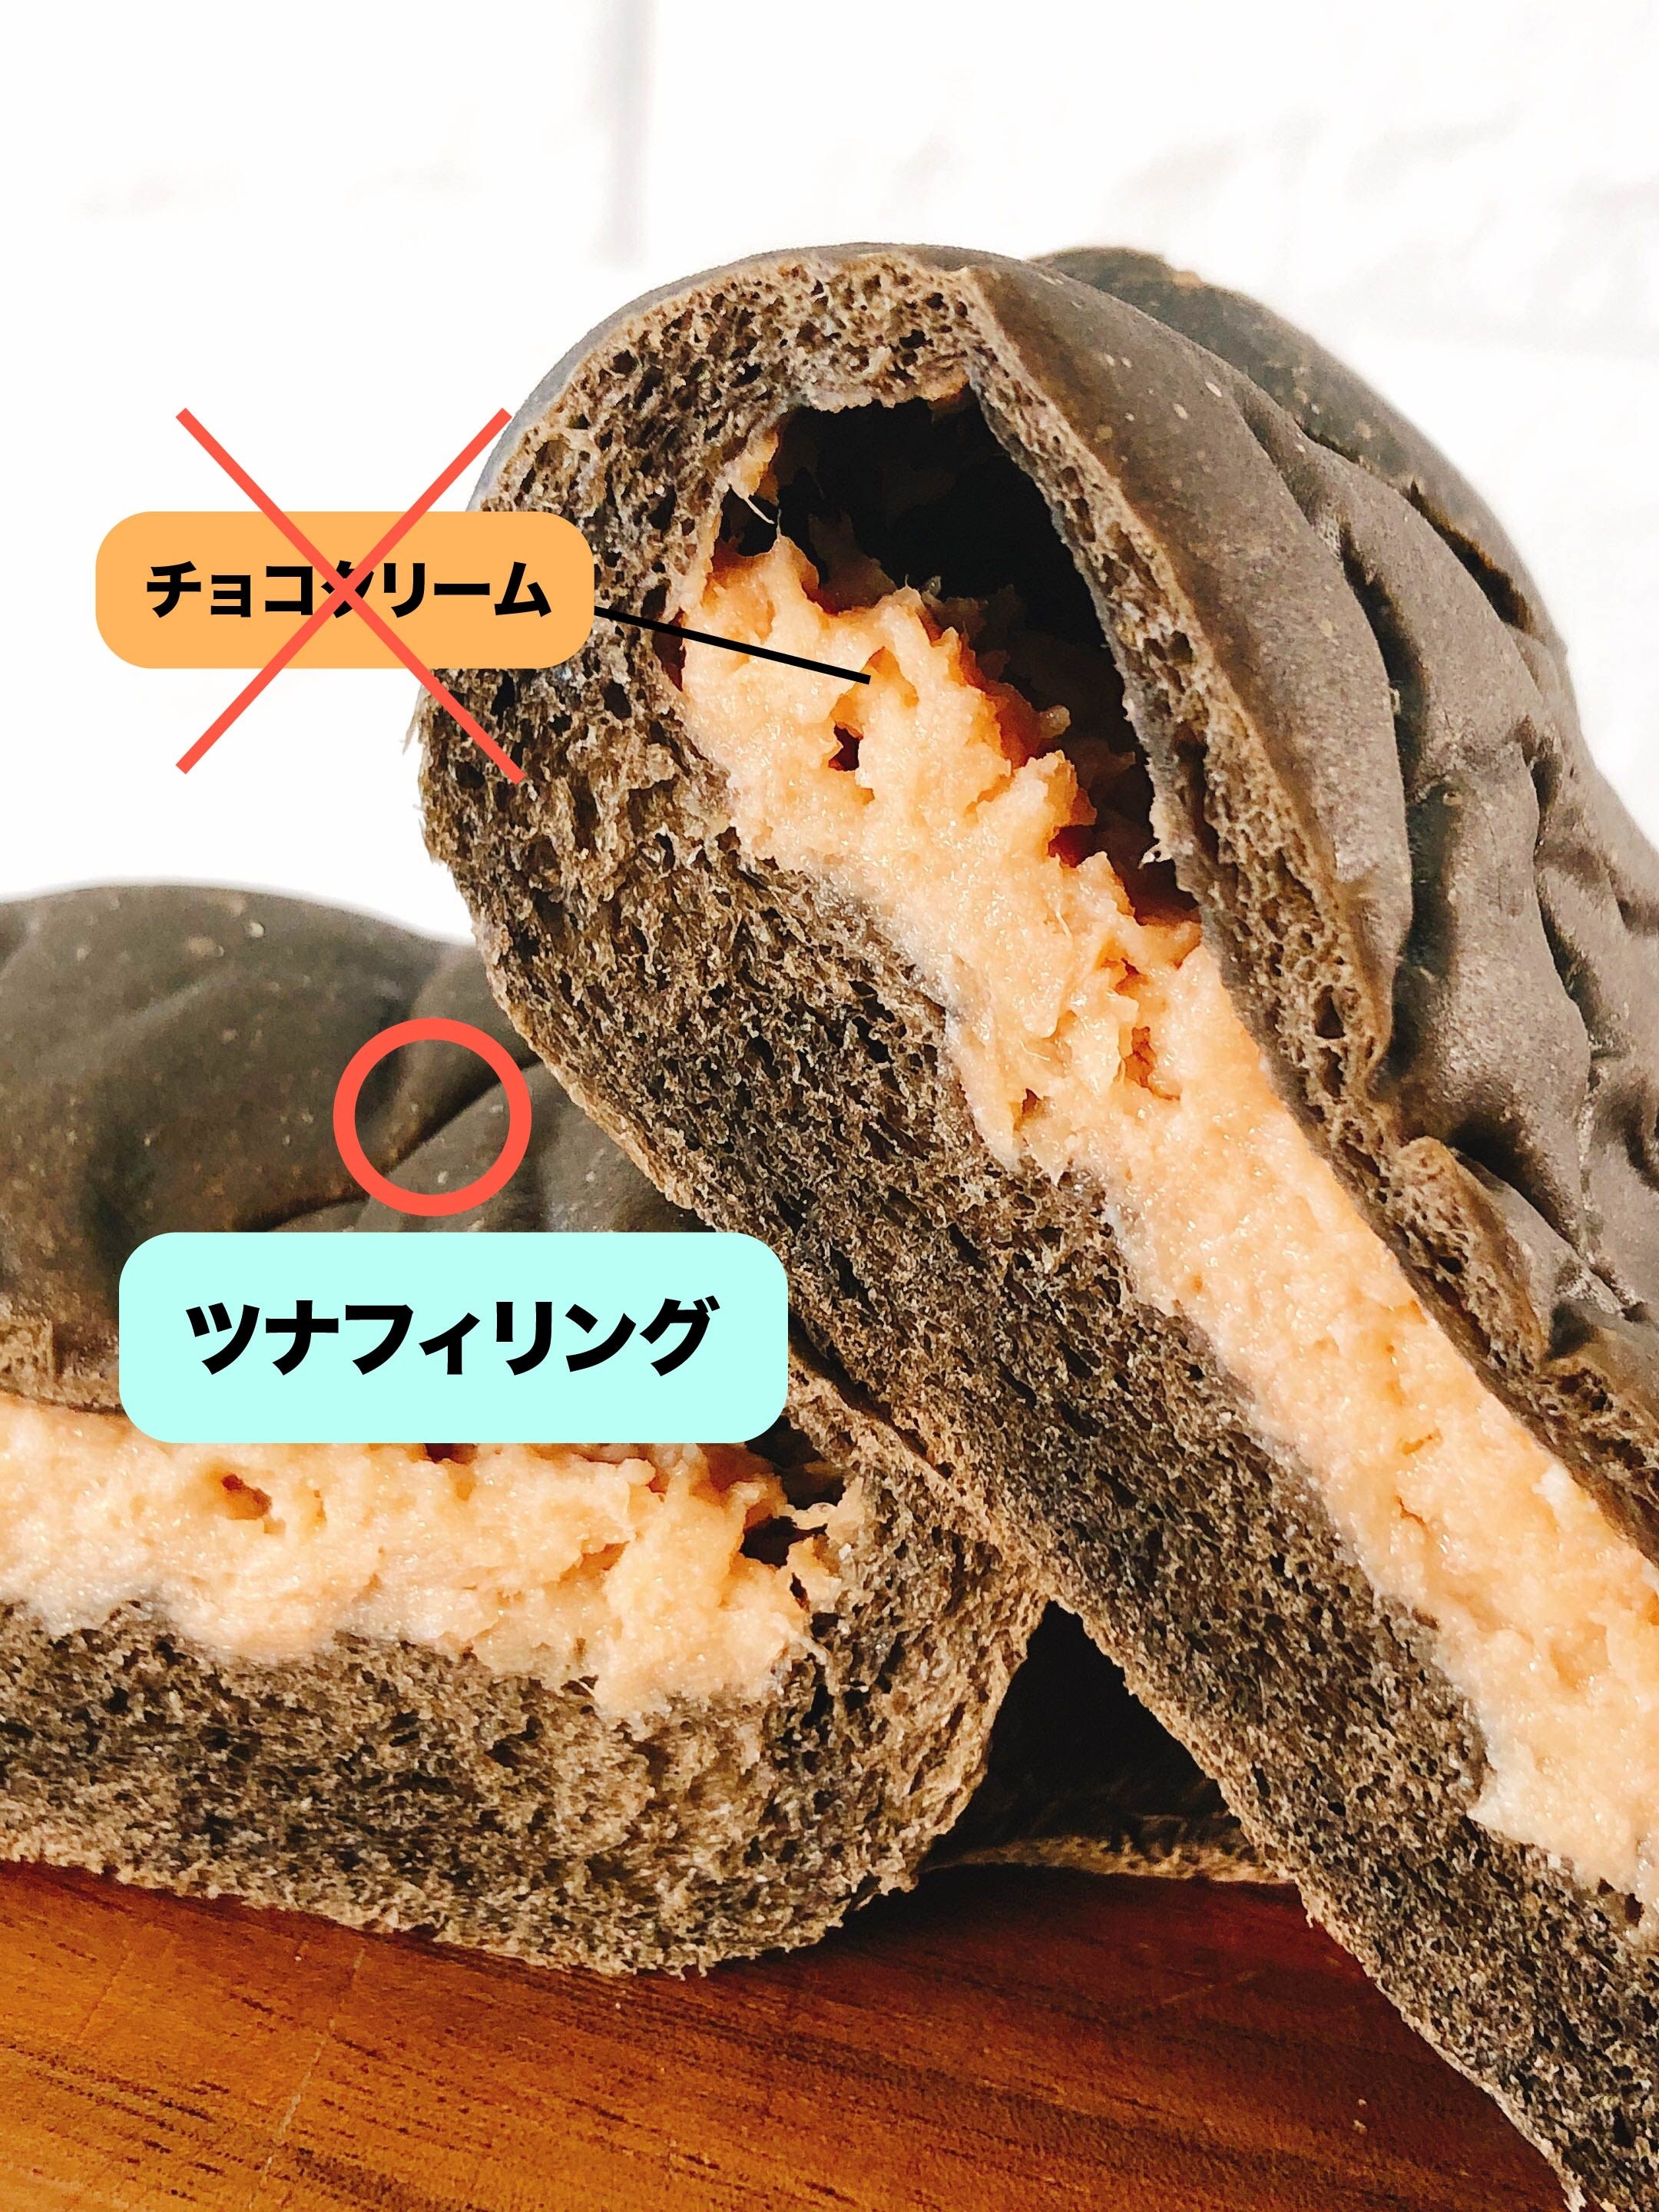 なんで作ったの ローソンの ネタ系パン が奇想天外すぎる